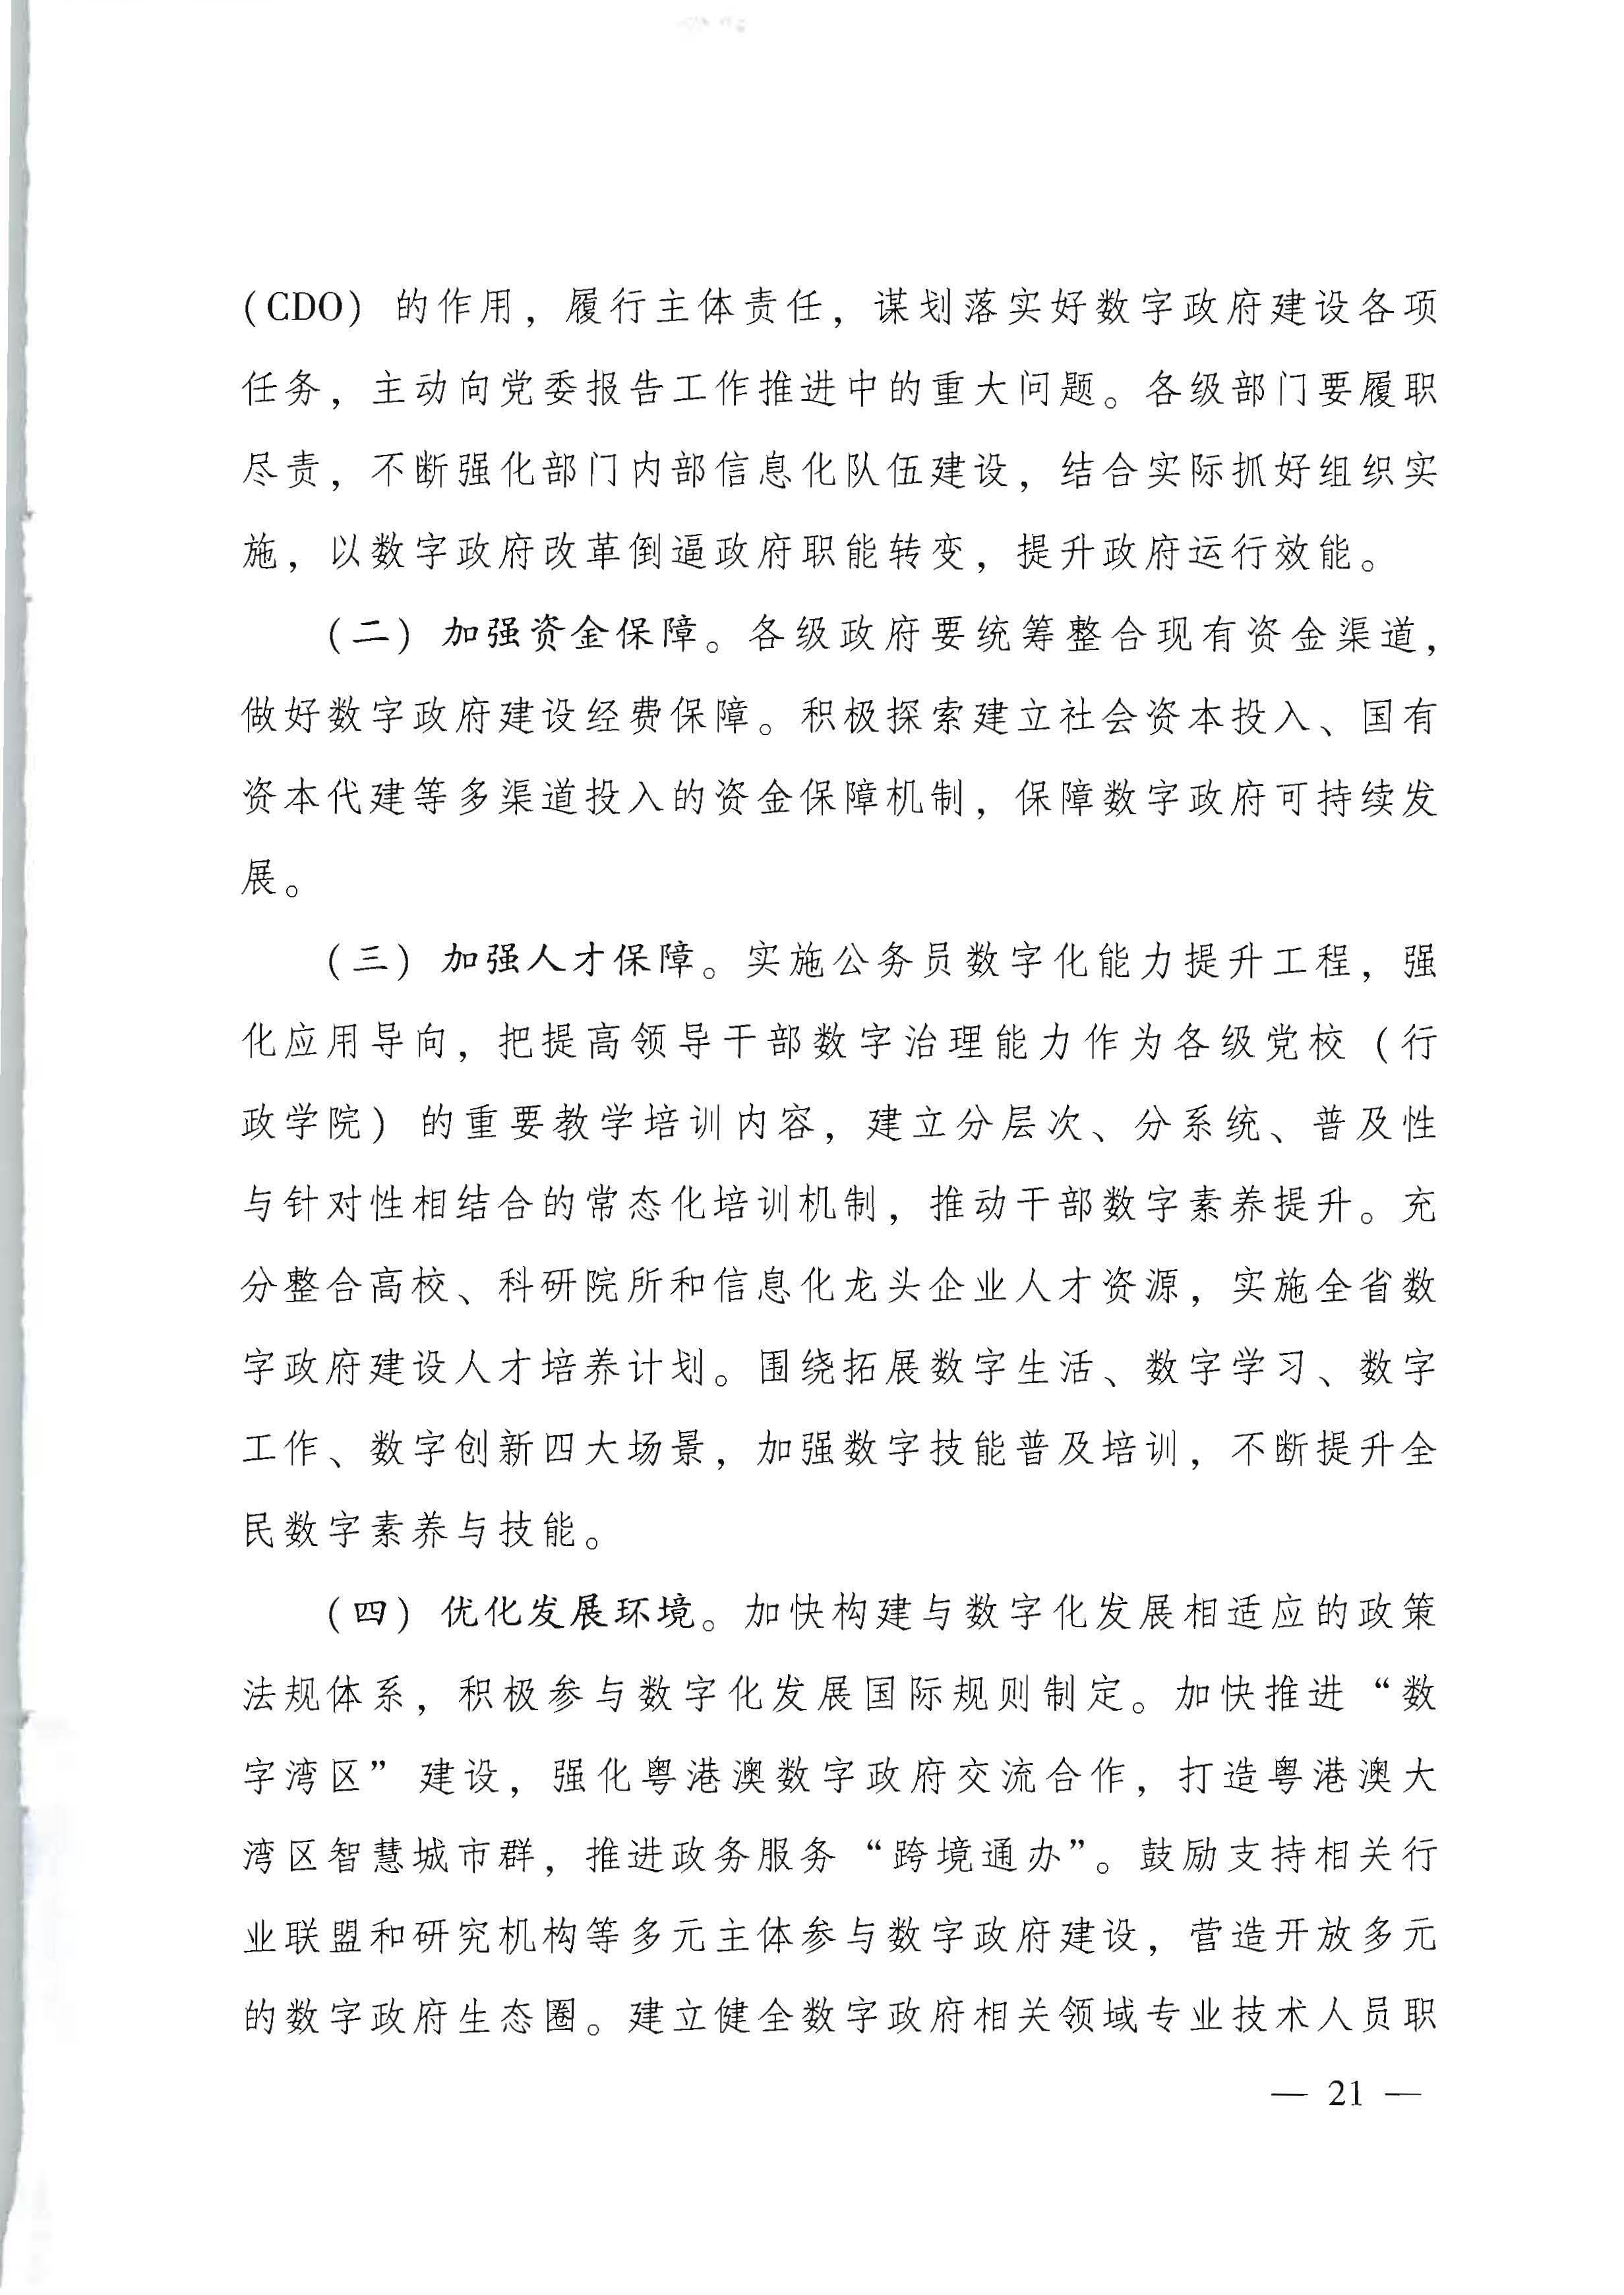 广东省人民政府关于进一步深化数字政府改革建设的实施意见_页面_21.jpg